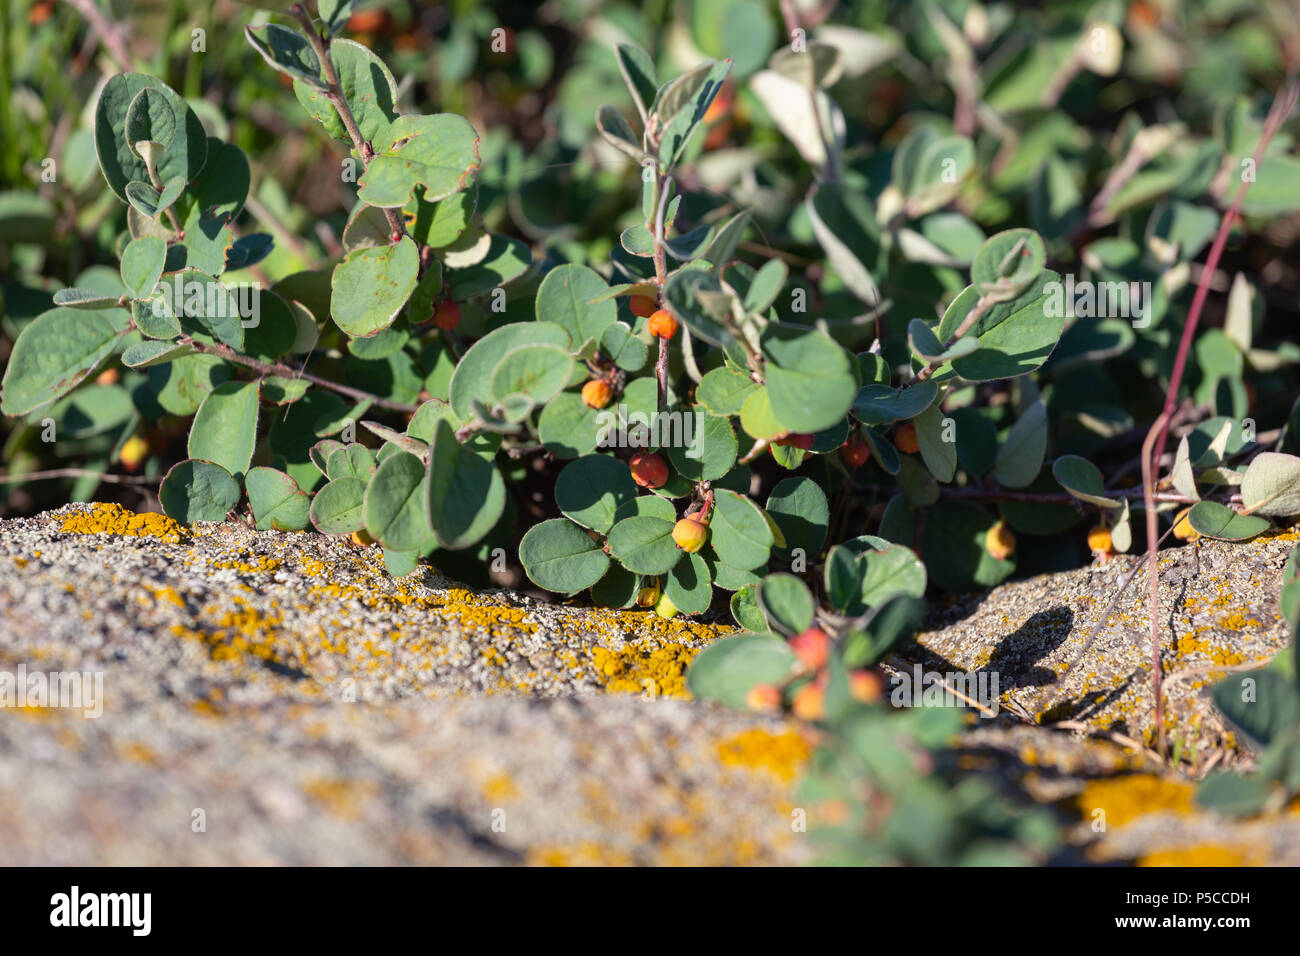 Cotoneaster horizontalis plante avec de petits fruits rouges bien mûrs Banque D'Images